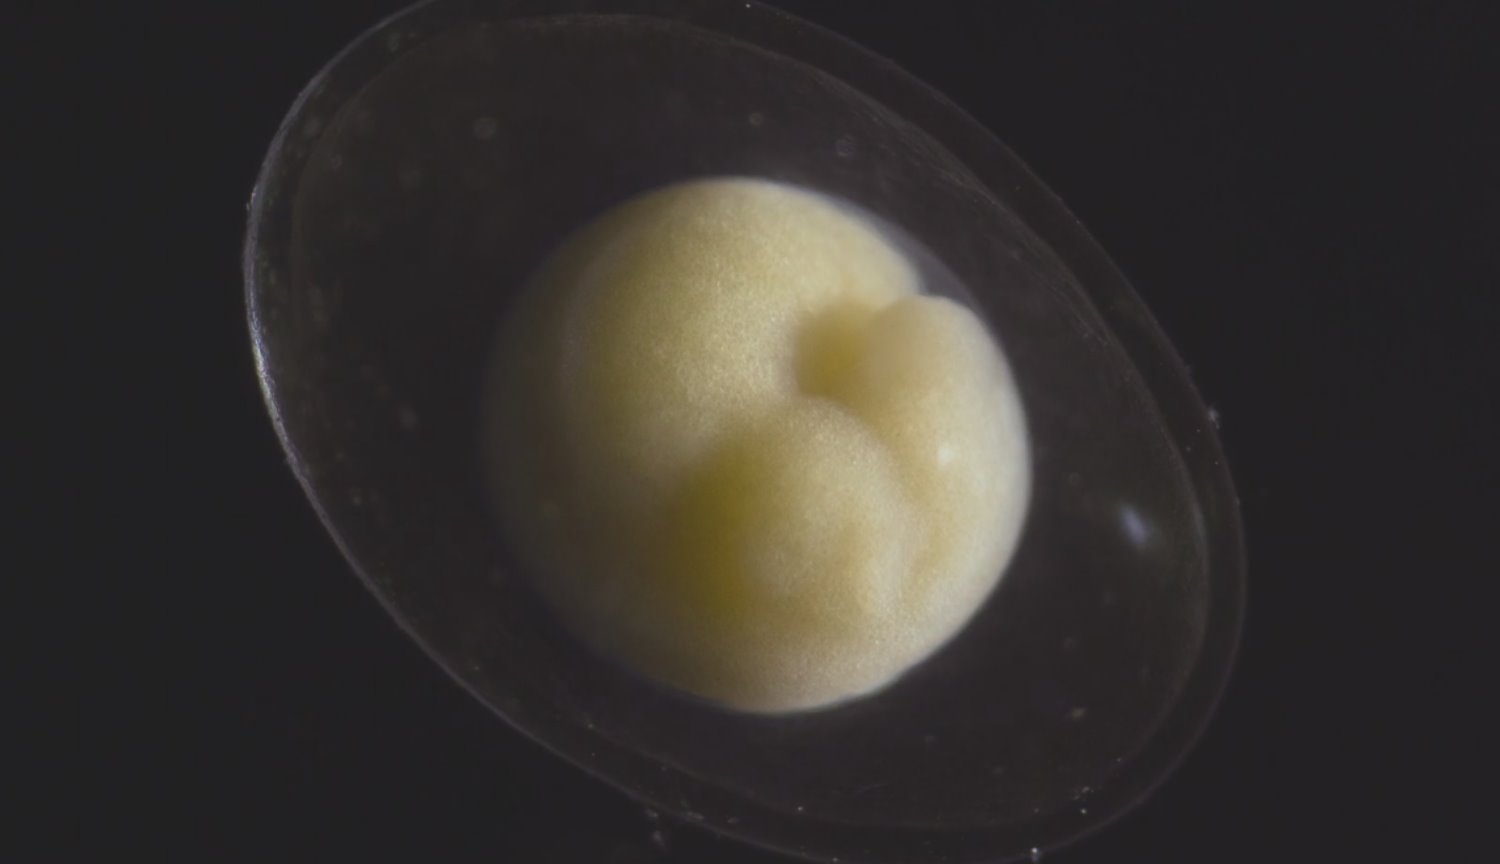 #video | Como un diminuto embrión se convierte en el maravilloso organismo vivo?